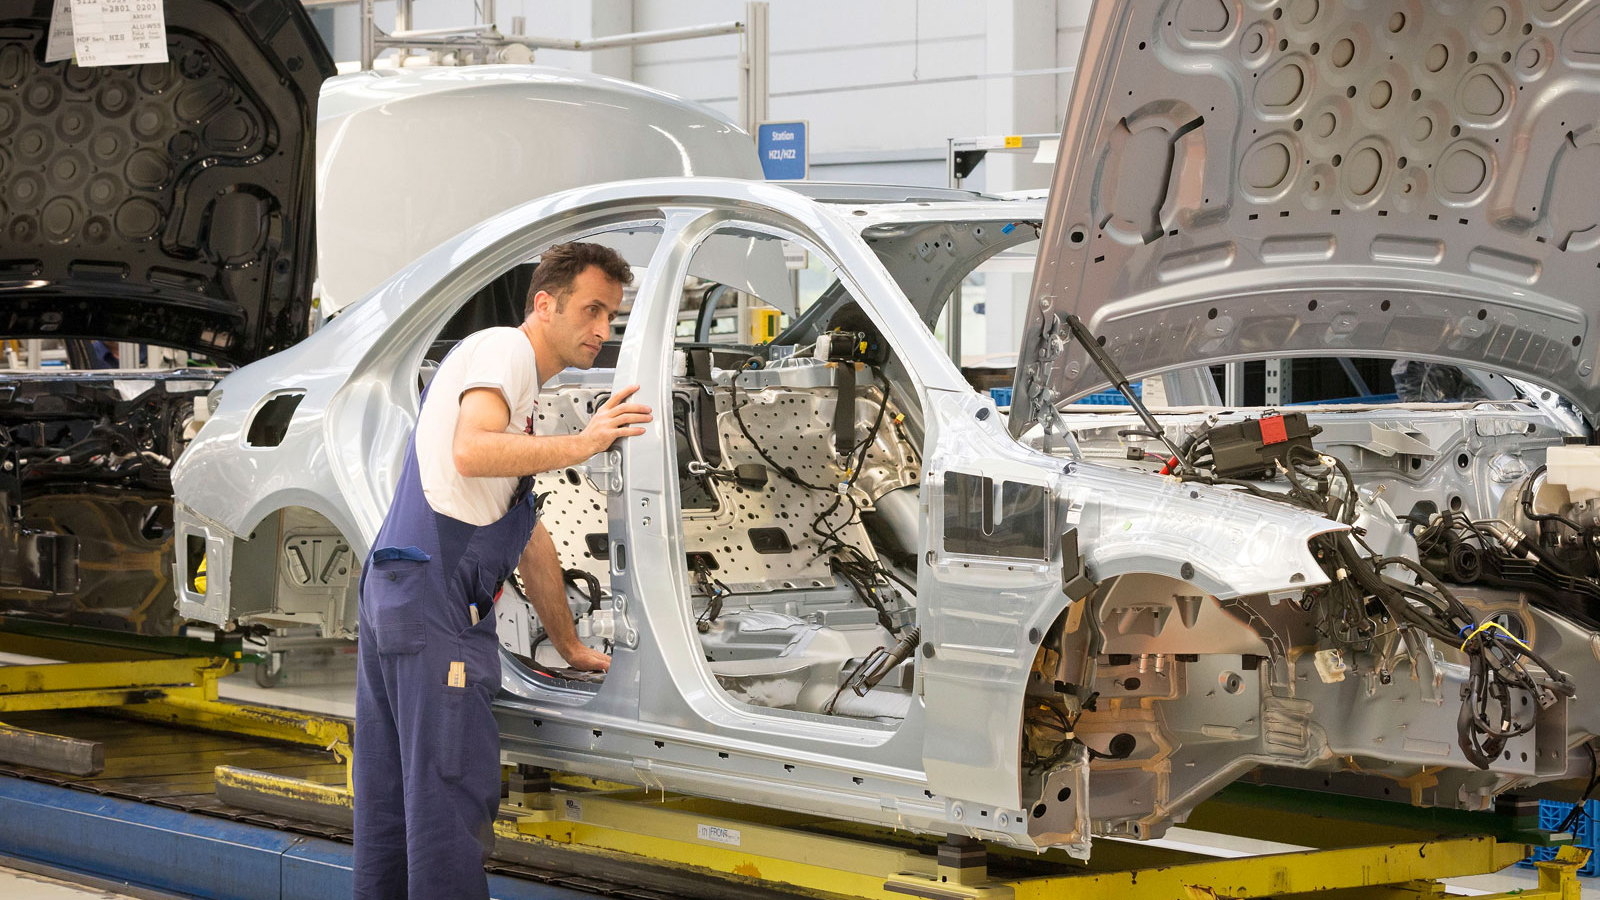 2014 Mercedes-Benz S Class production in Sindelfingen, Germany